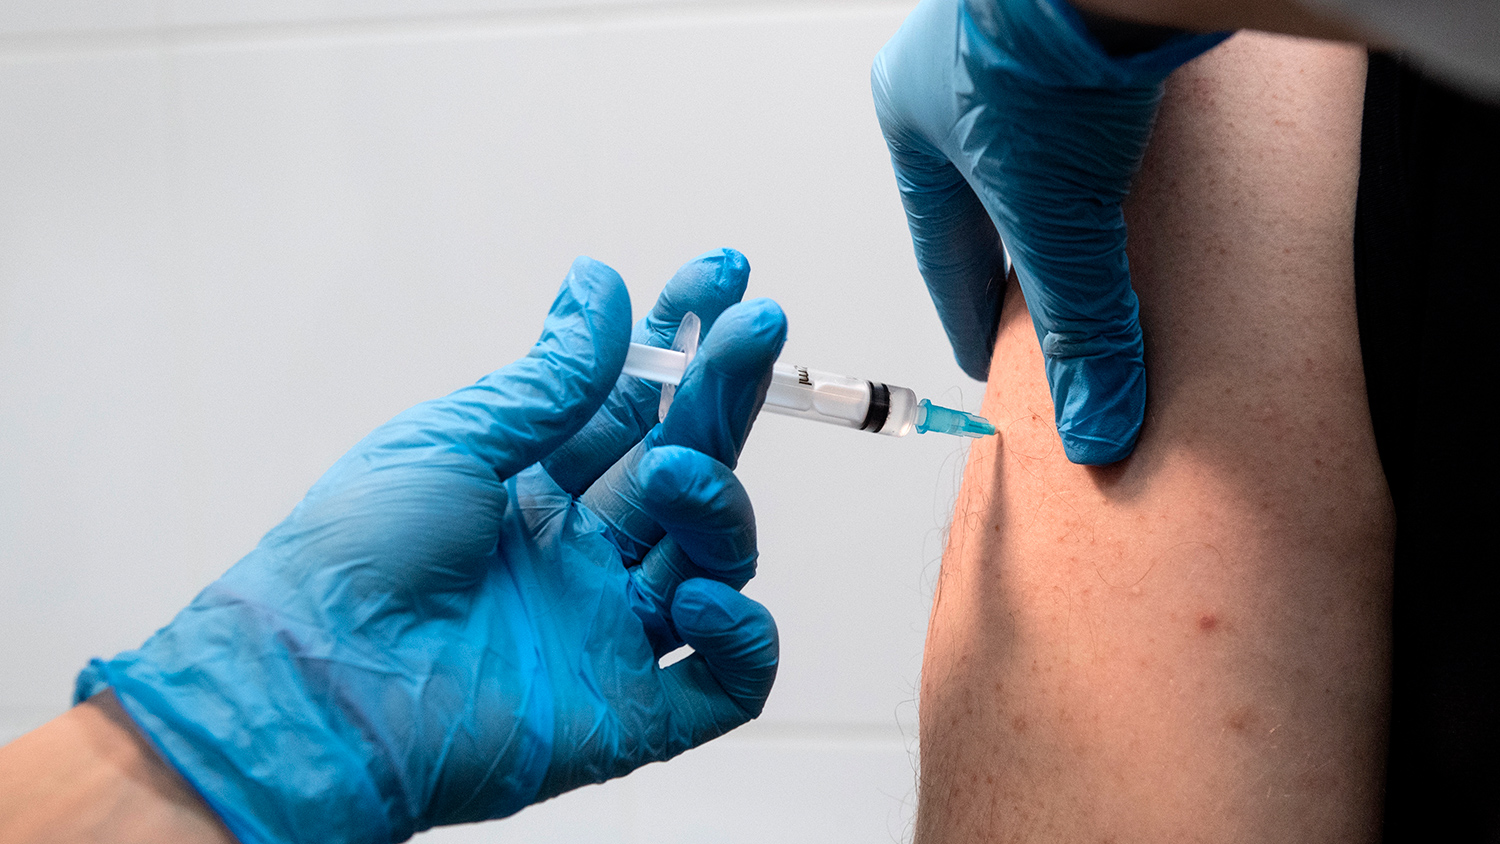 В Германии медсестра ввела вместо вакцины физраствор 8600 пациентам